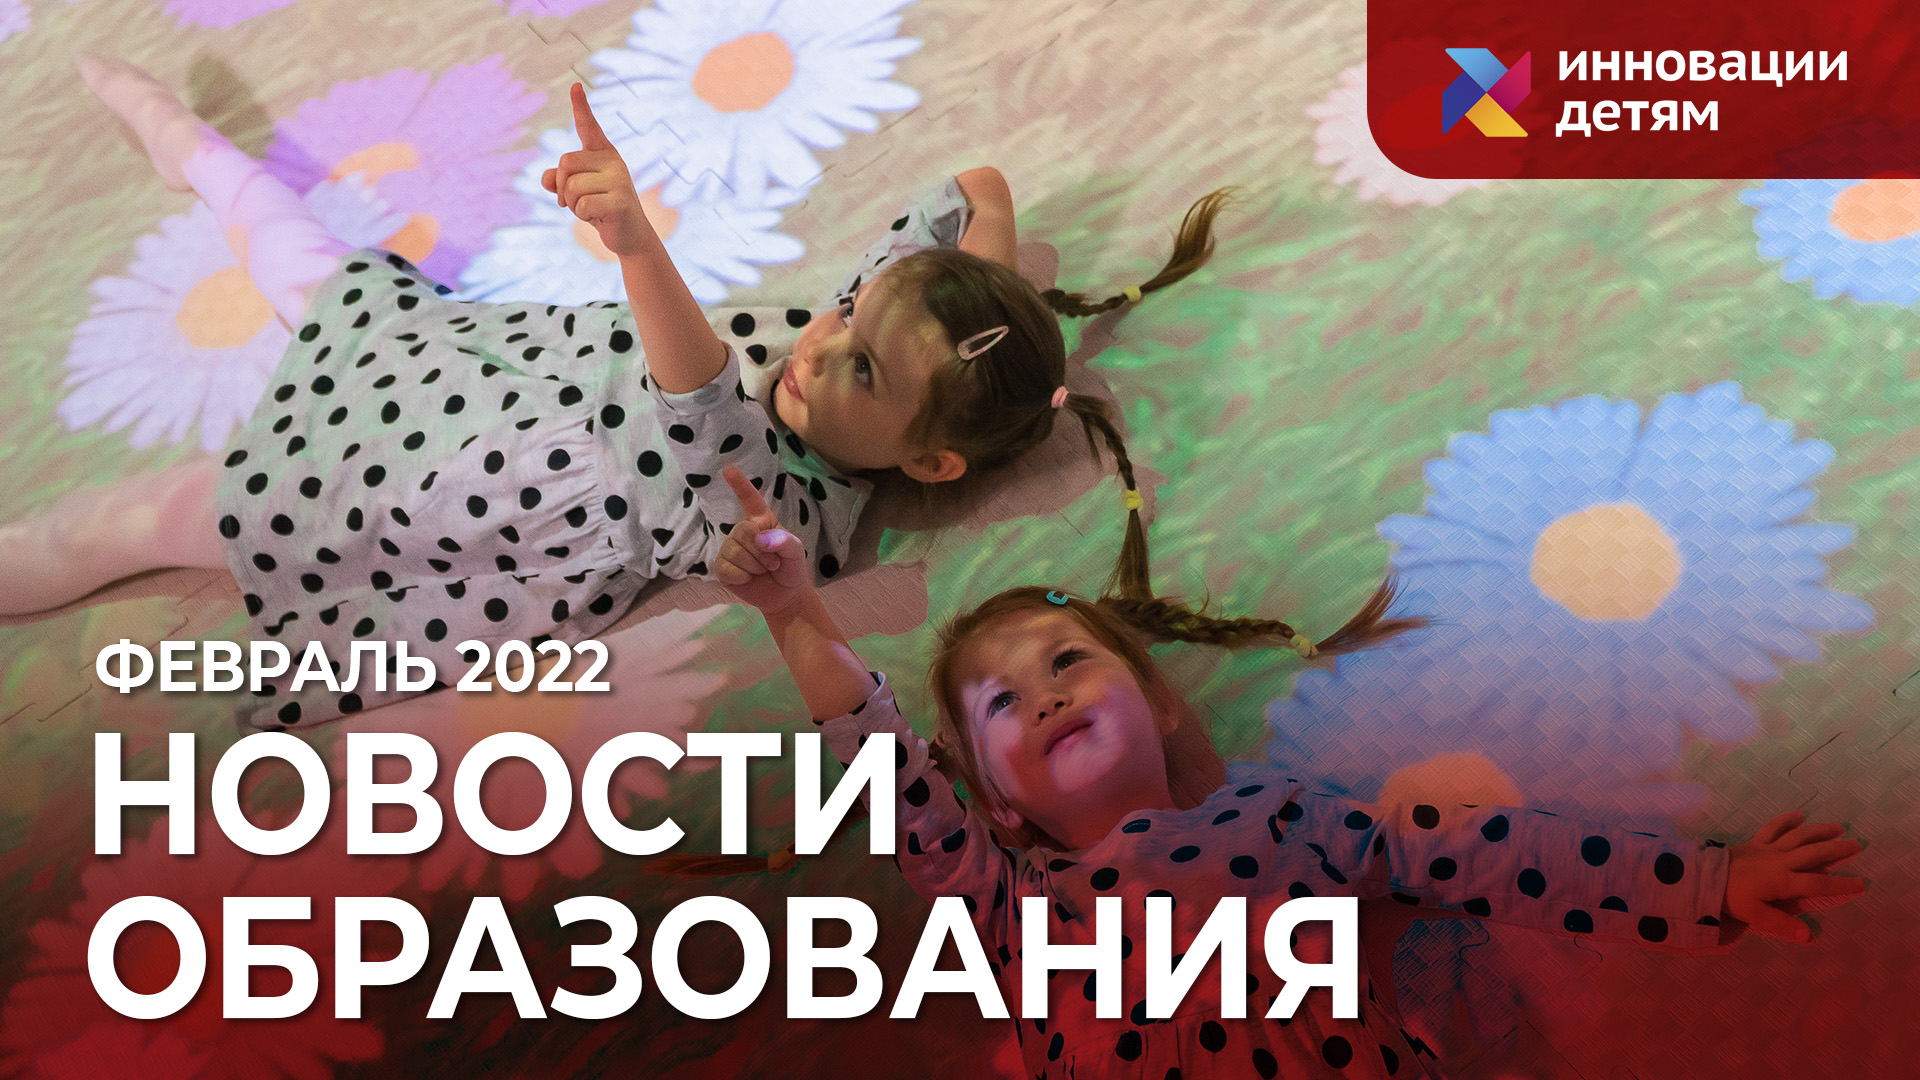 Новости образования от «Инновации детям» за февраль 2022